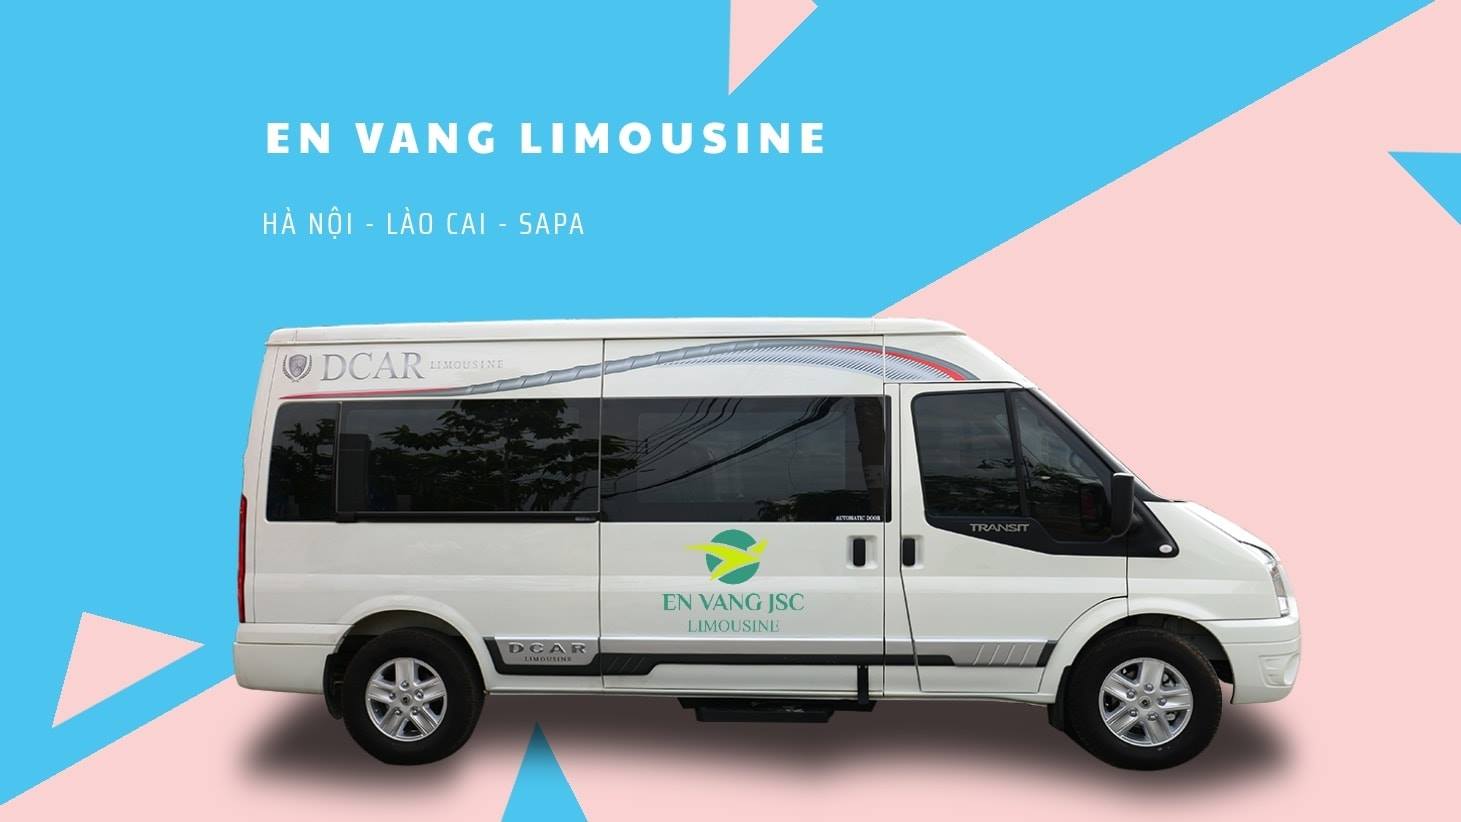 Xe limousine đi Lào Cai - Hãng xe Én Vàng Limousine